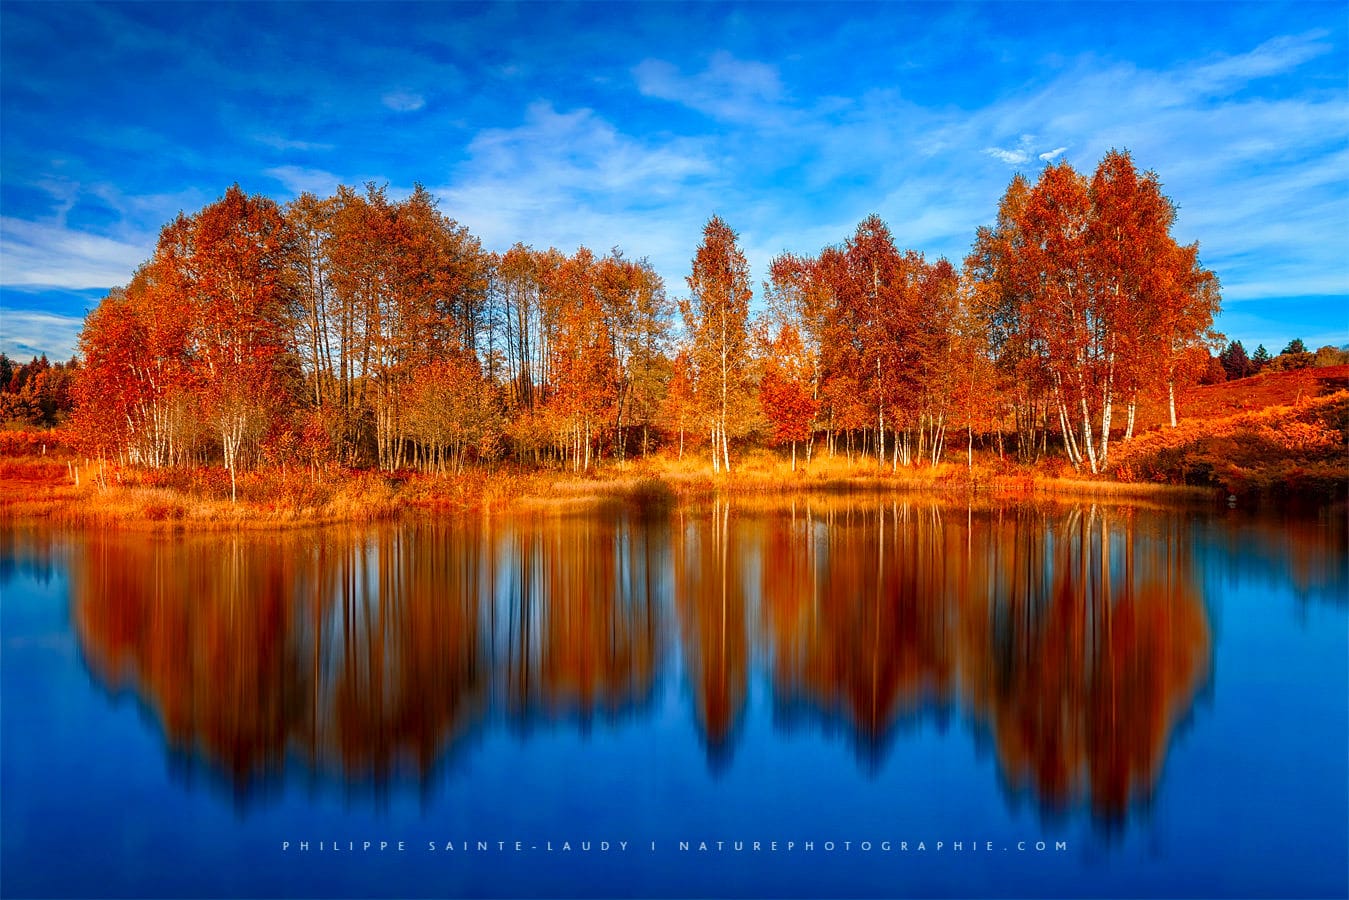 Reflet d'une forêt en automne - 1000 Étangs